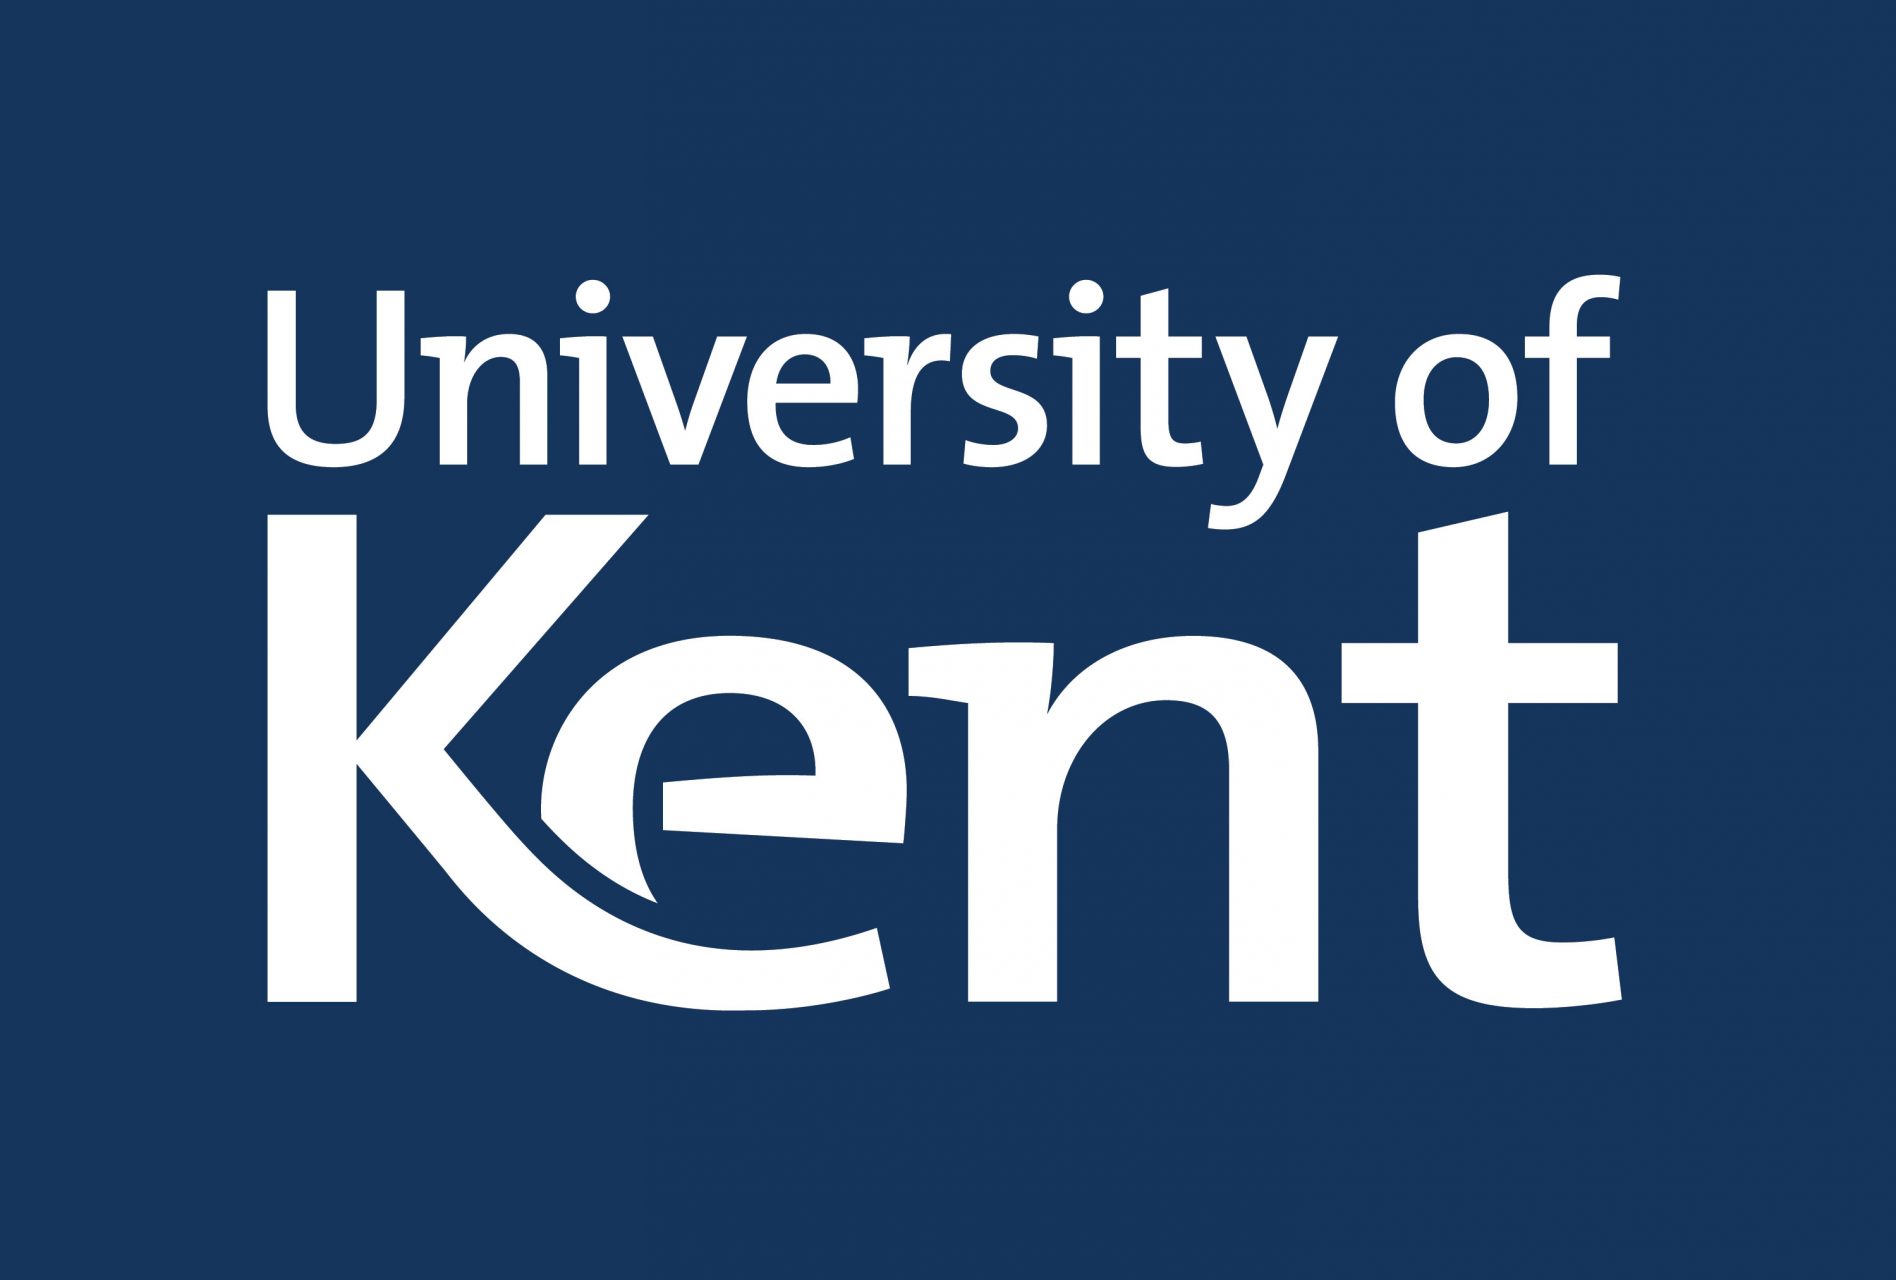 Kent University logo white text on blue background